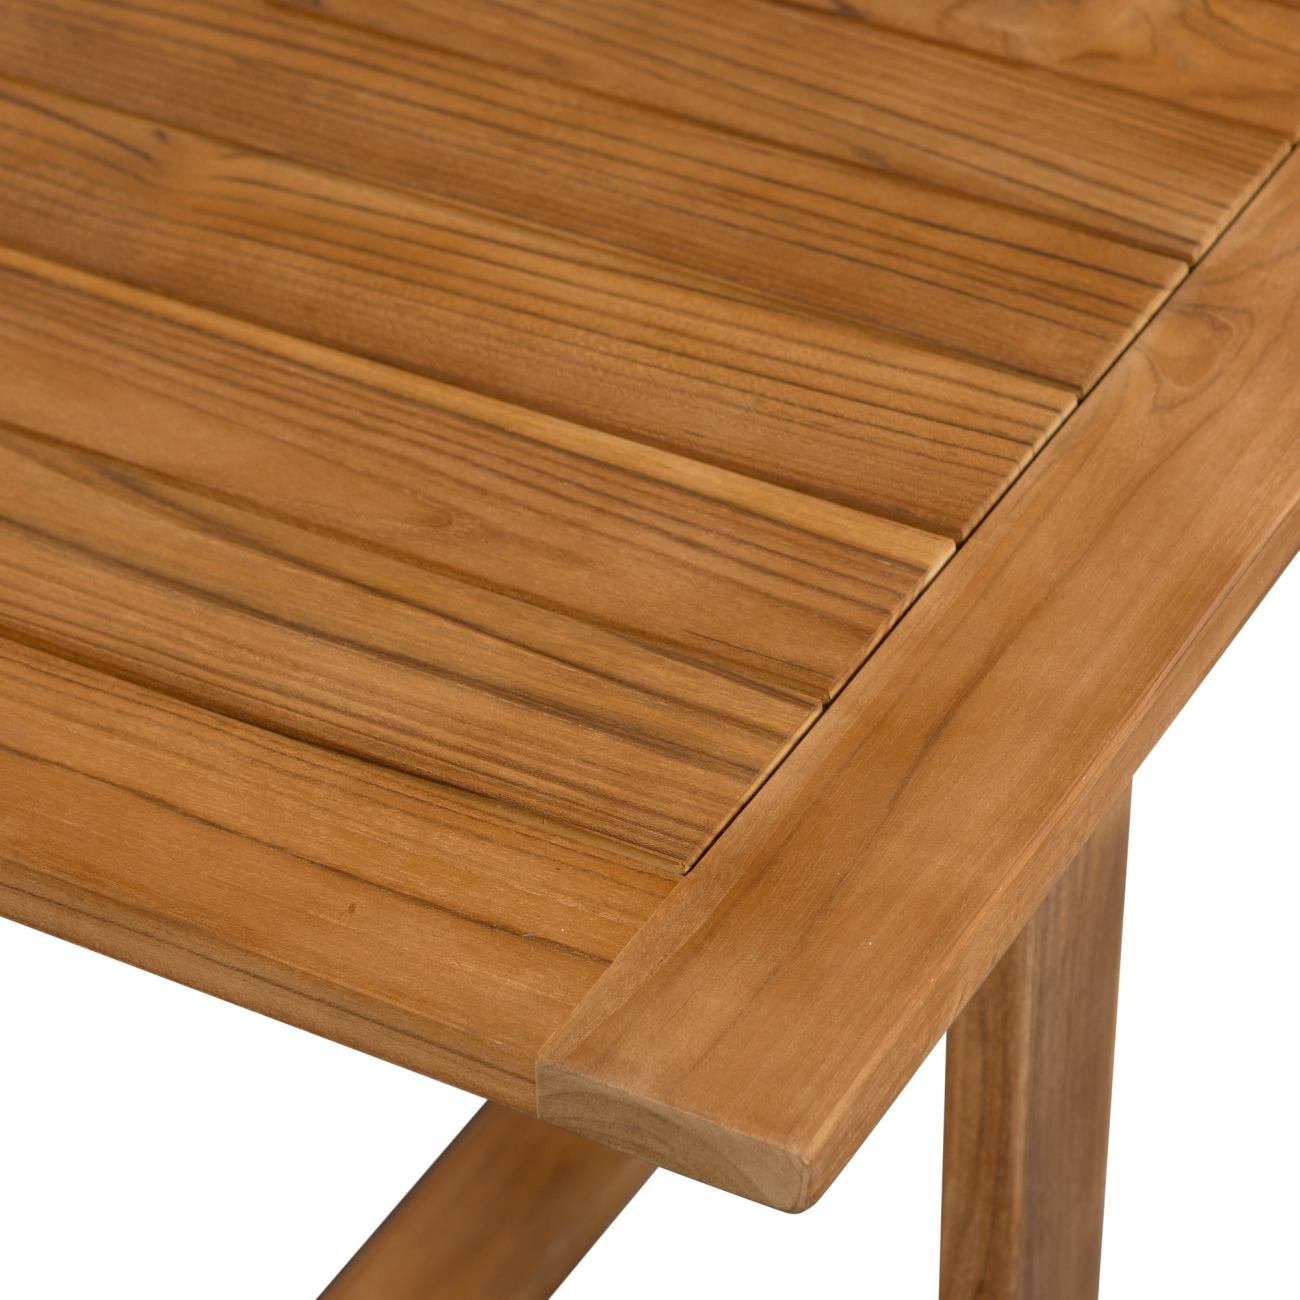 Der Gartenesstisch Beaver überzeugt mit seinem modernen Design. Gefertigt wurde er aus Teakholz, welcher einen natürlichen Farbton besitzt. Das Gestell ist auch aus Teakholz. Der Tisch besitzt eine Größe von 240x90 cm.